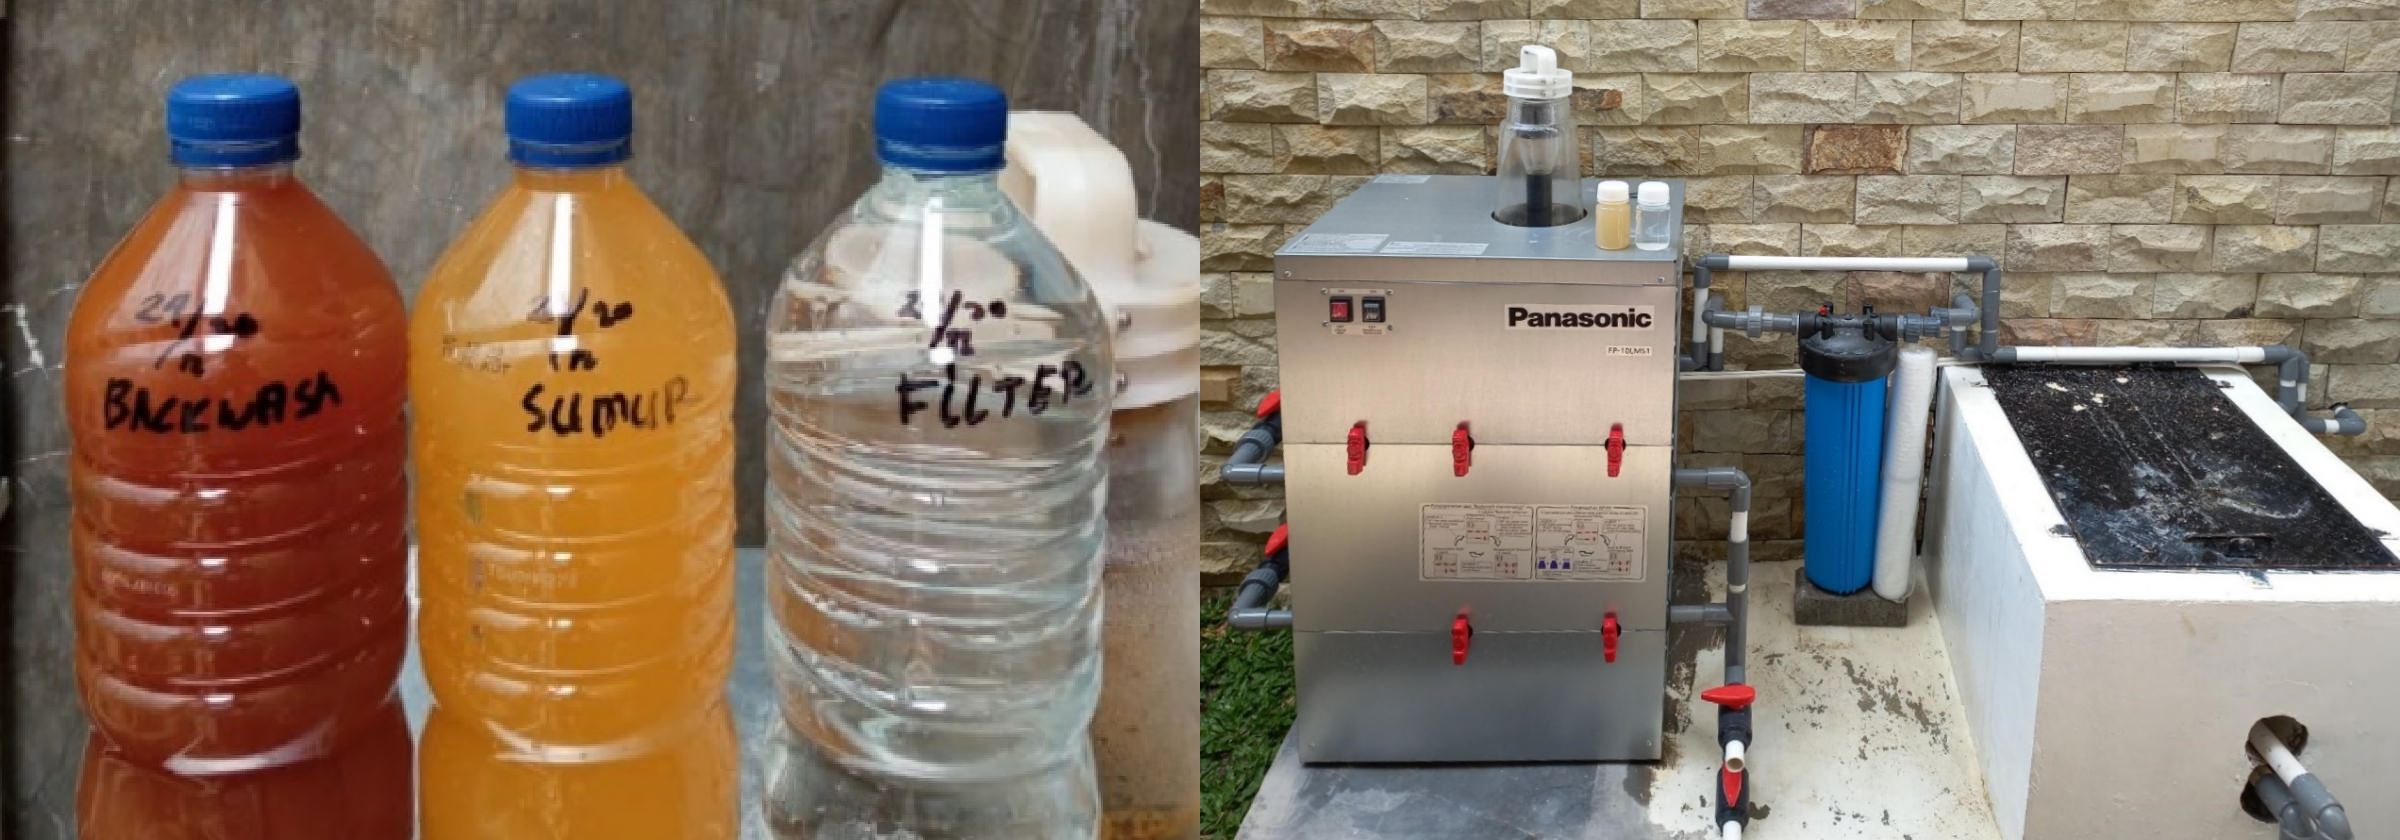 水浄化機器と、水浄化機器を通した水の色の変化を示した画像